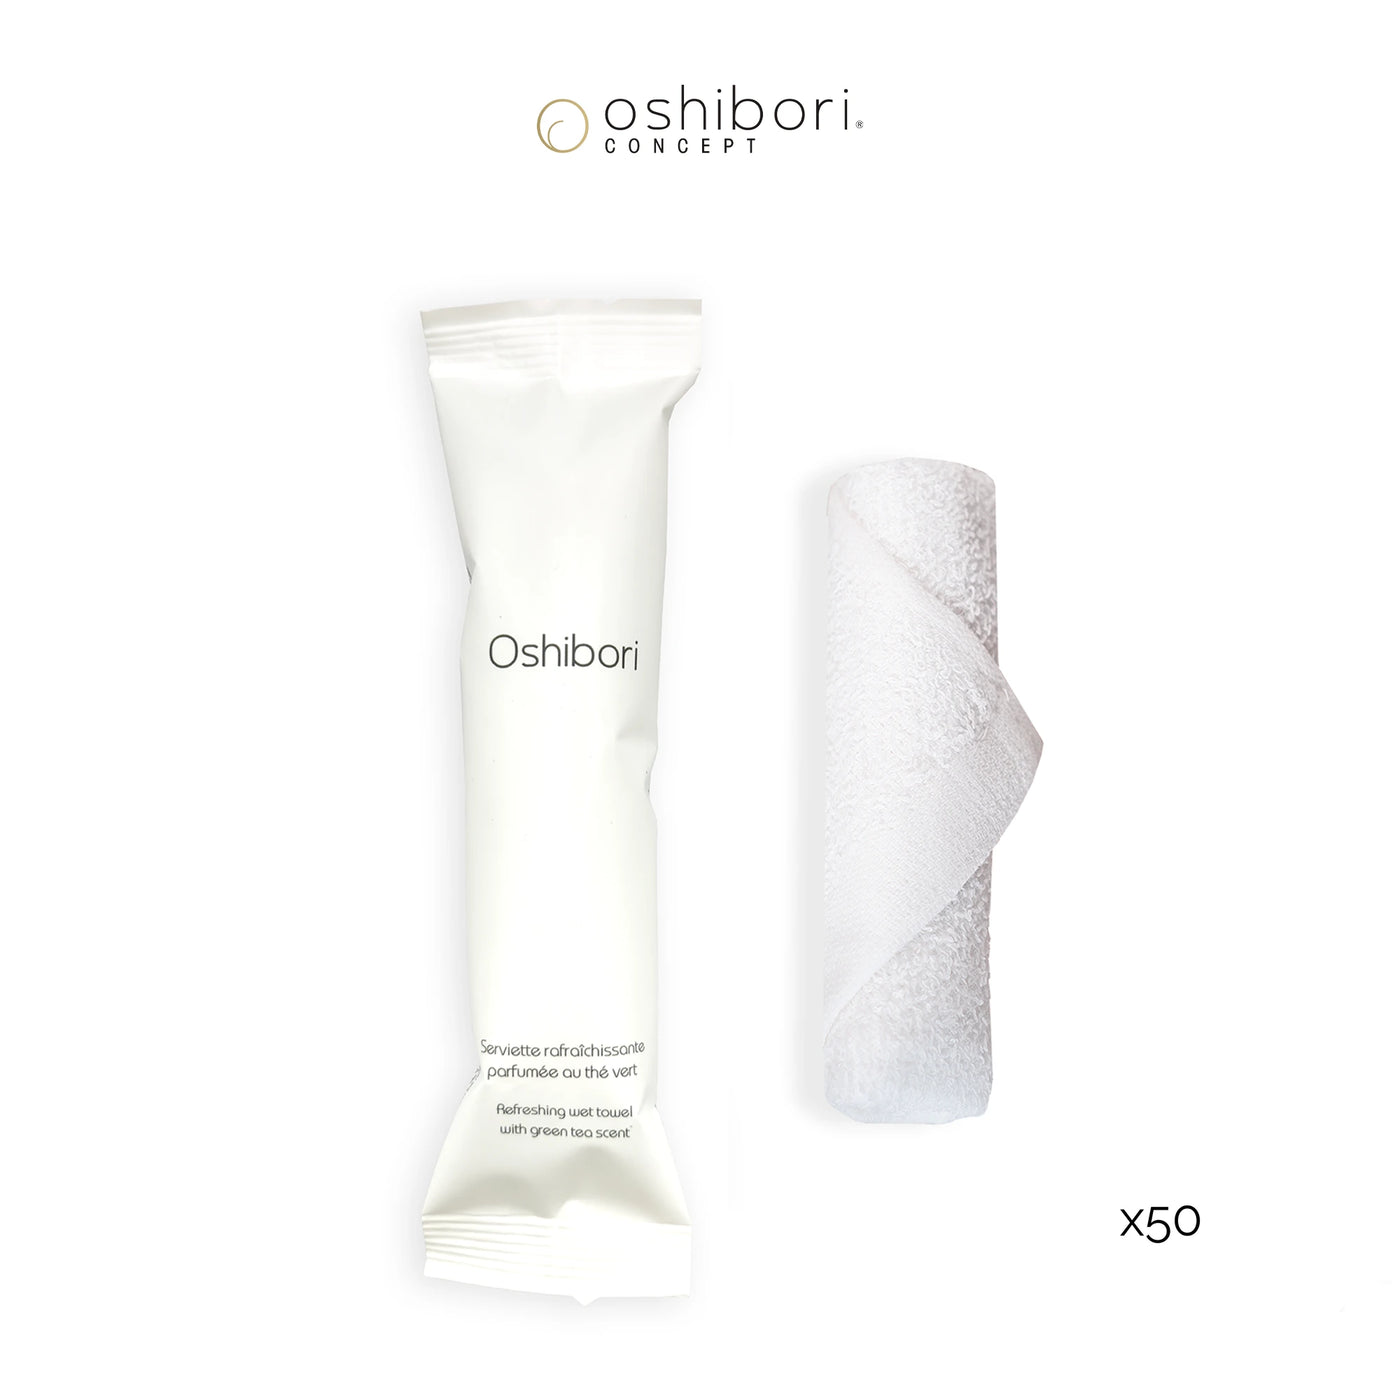 Oshibori rafraichissant - 10 grammes - Blanc (x50)